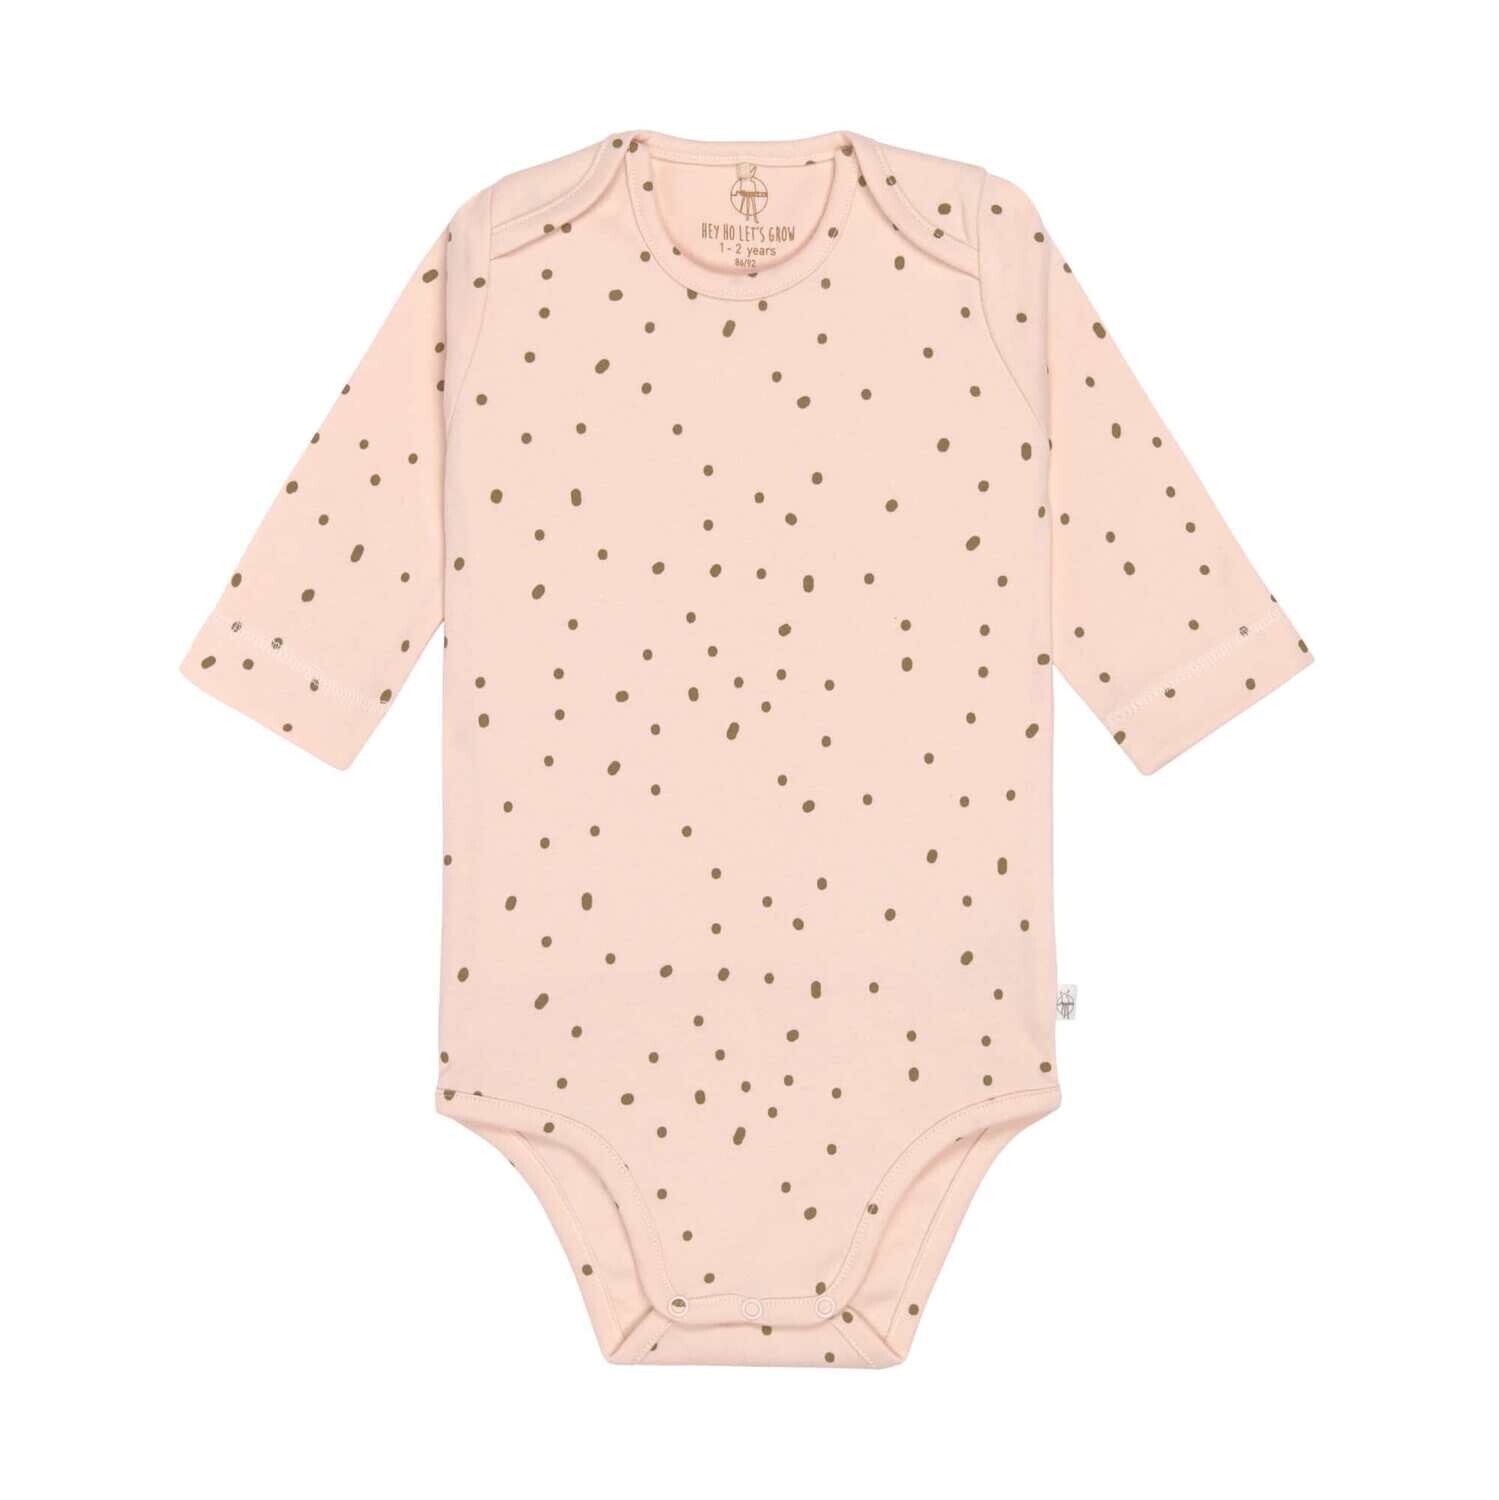 SALE Lässig Baby Wickelbody - Langarm, Powder Pink Größe wählbar (3- 24 Monate)